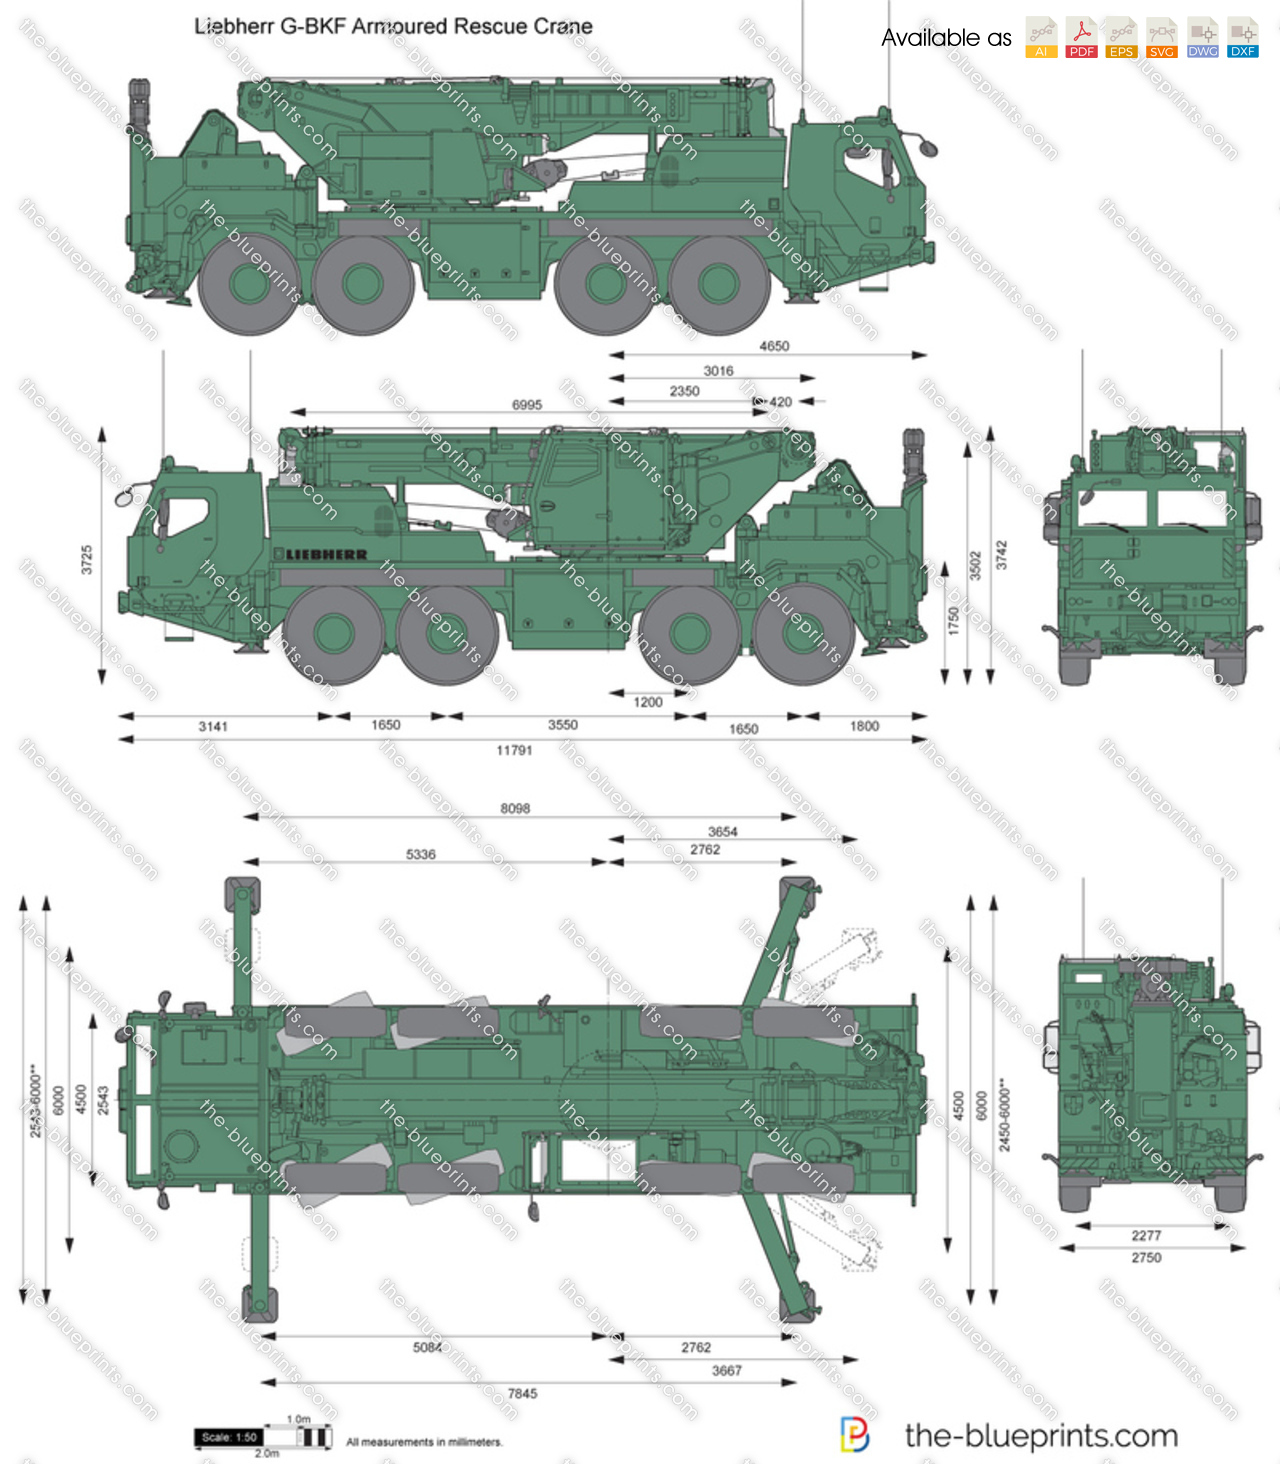 Liebherr G-BKF Armoured Rescue Crane